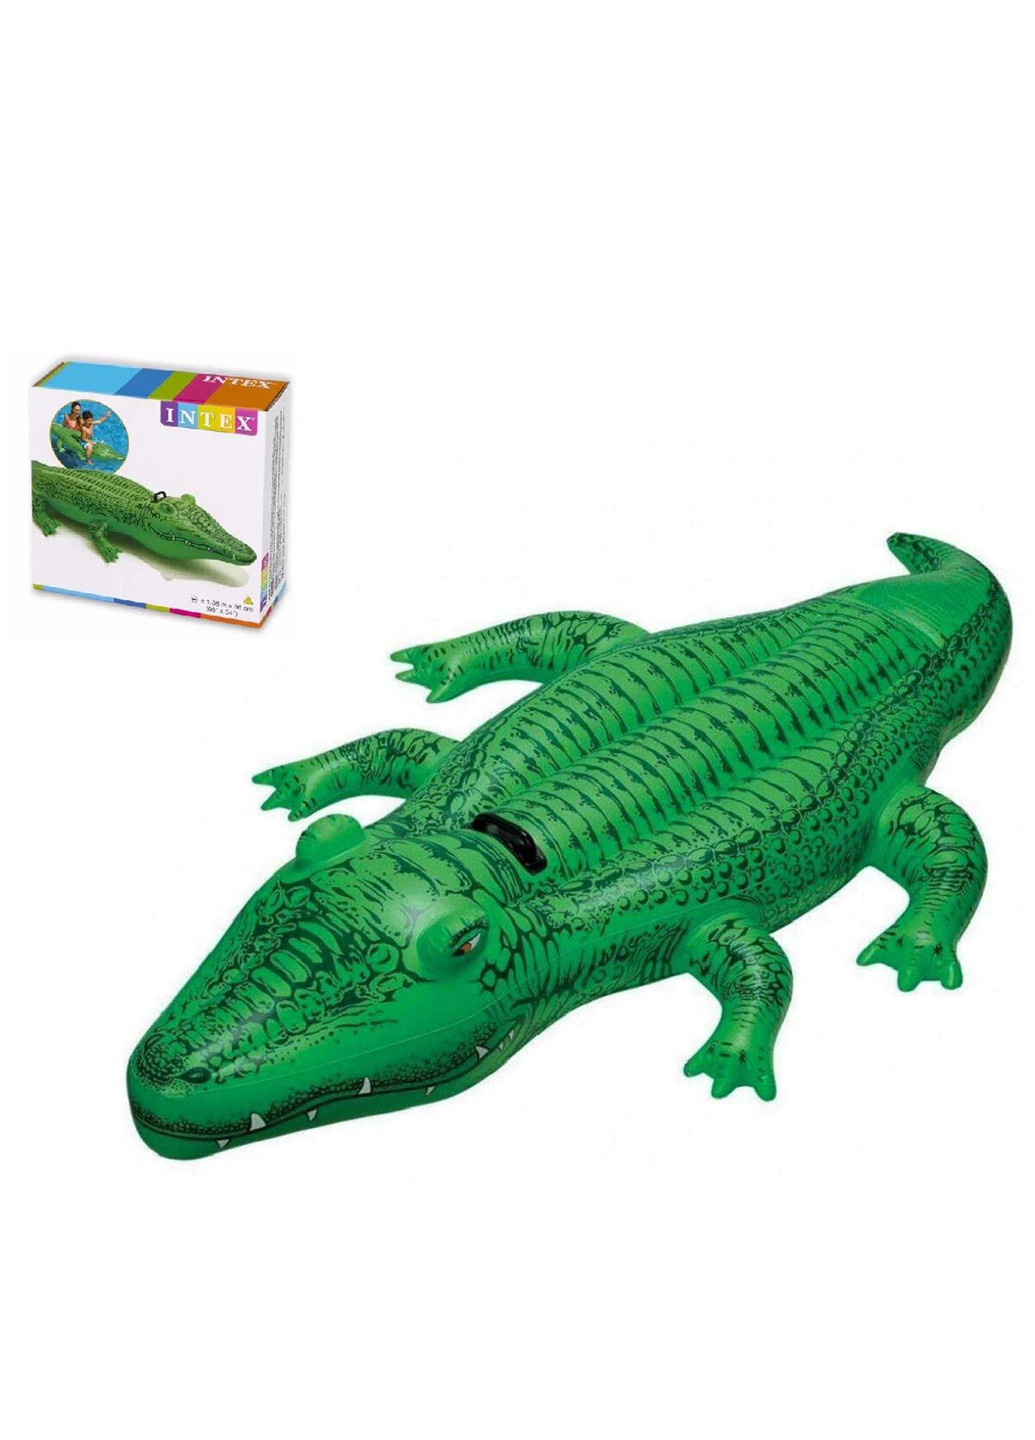 Надувной плотик Крокодил Intex (253422243)